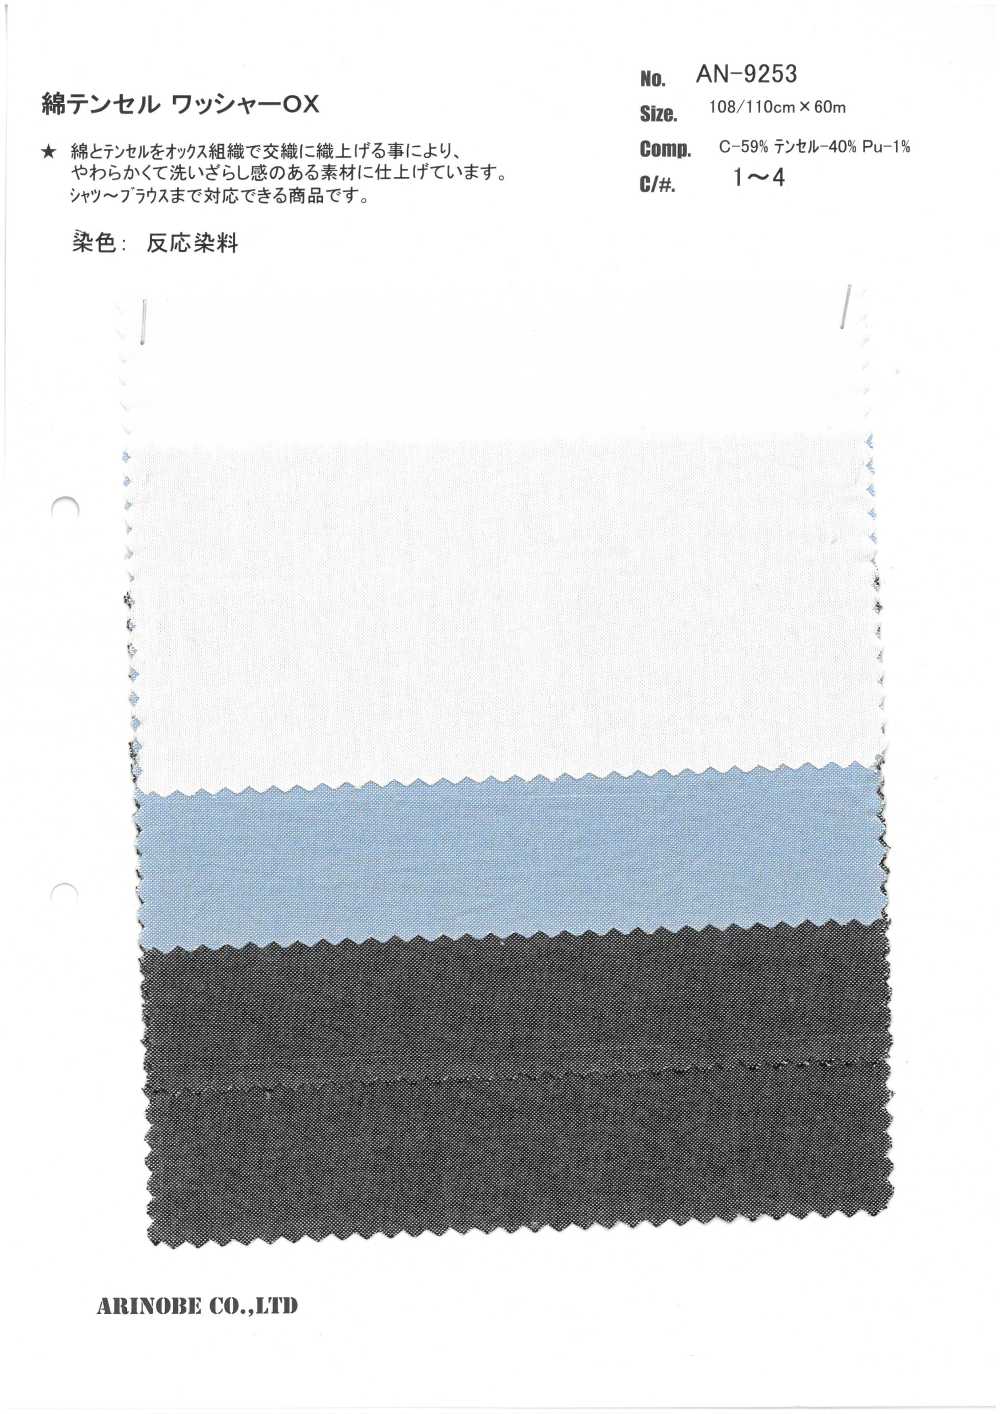 AN-9253 Processamento De Arruelas De Algodão / Tencel OX[Têxtil / Tecido] ARINOBE CO., LTD.